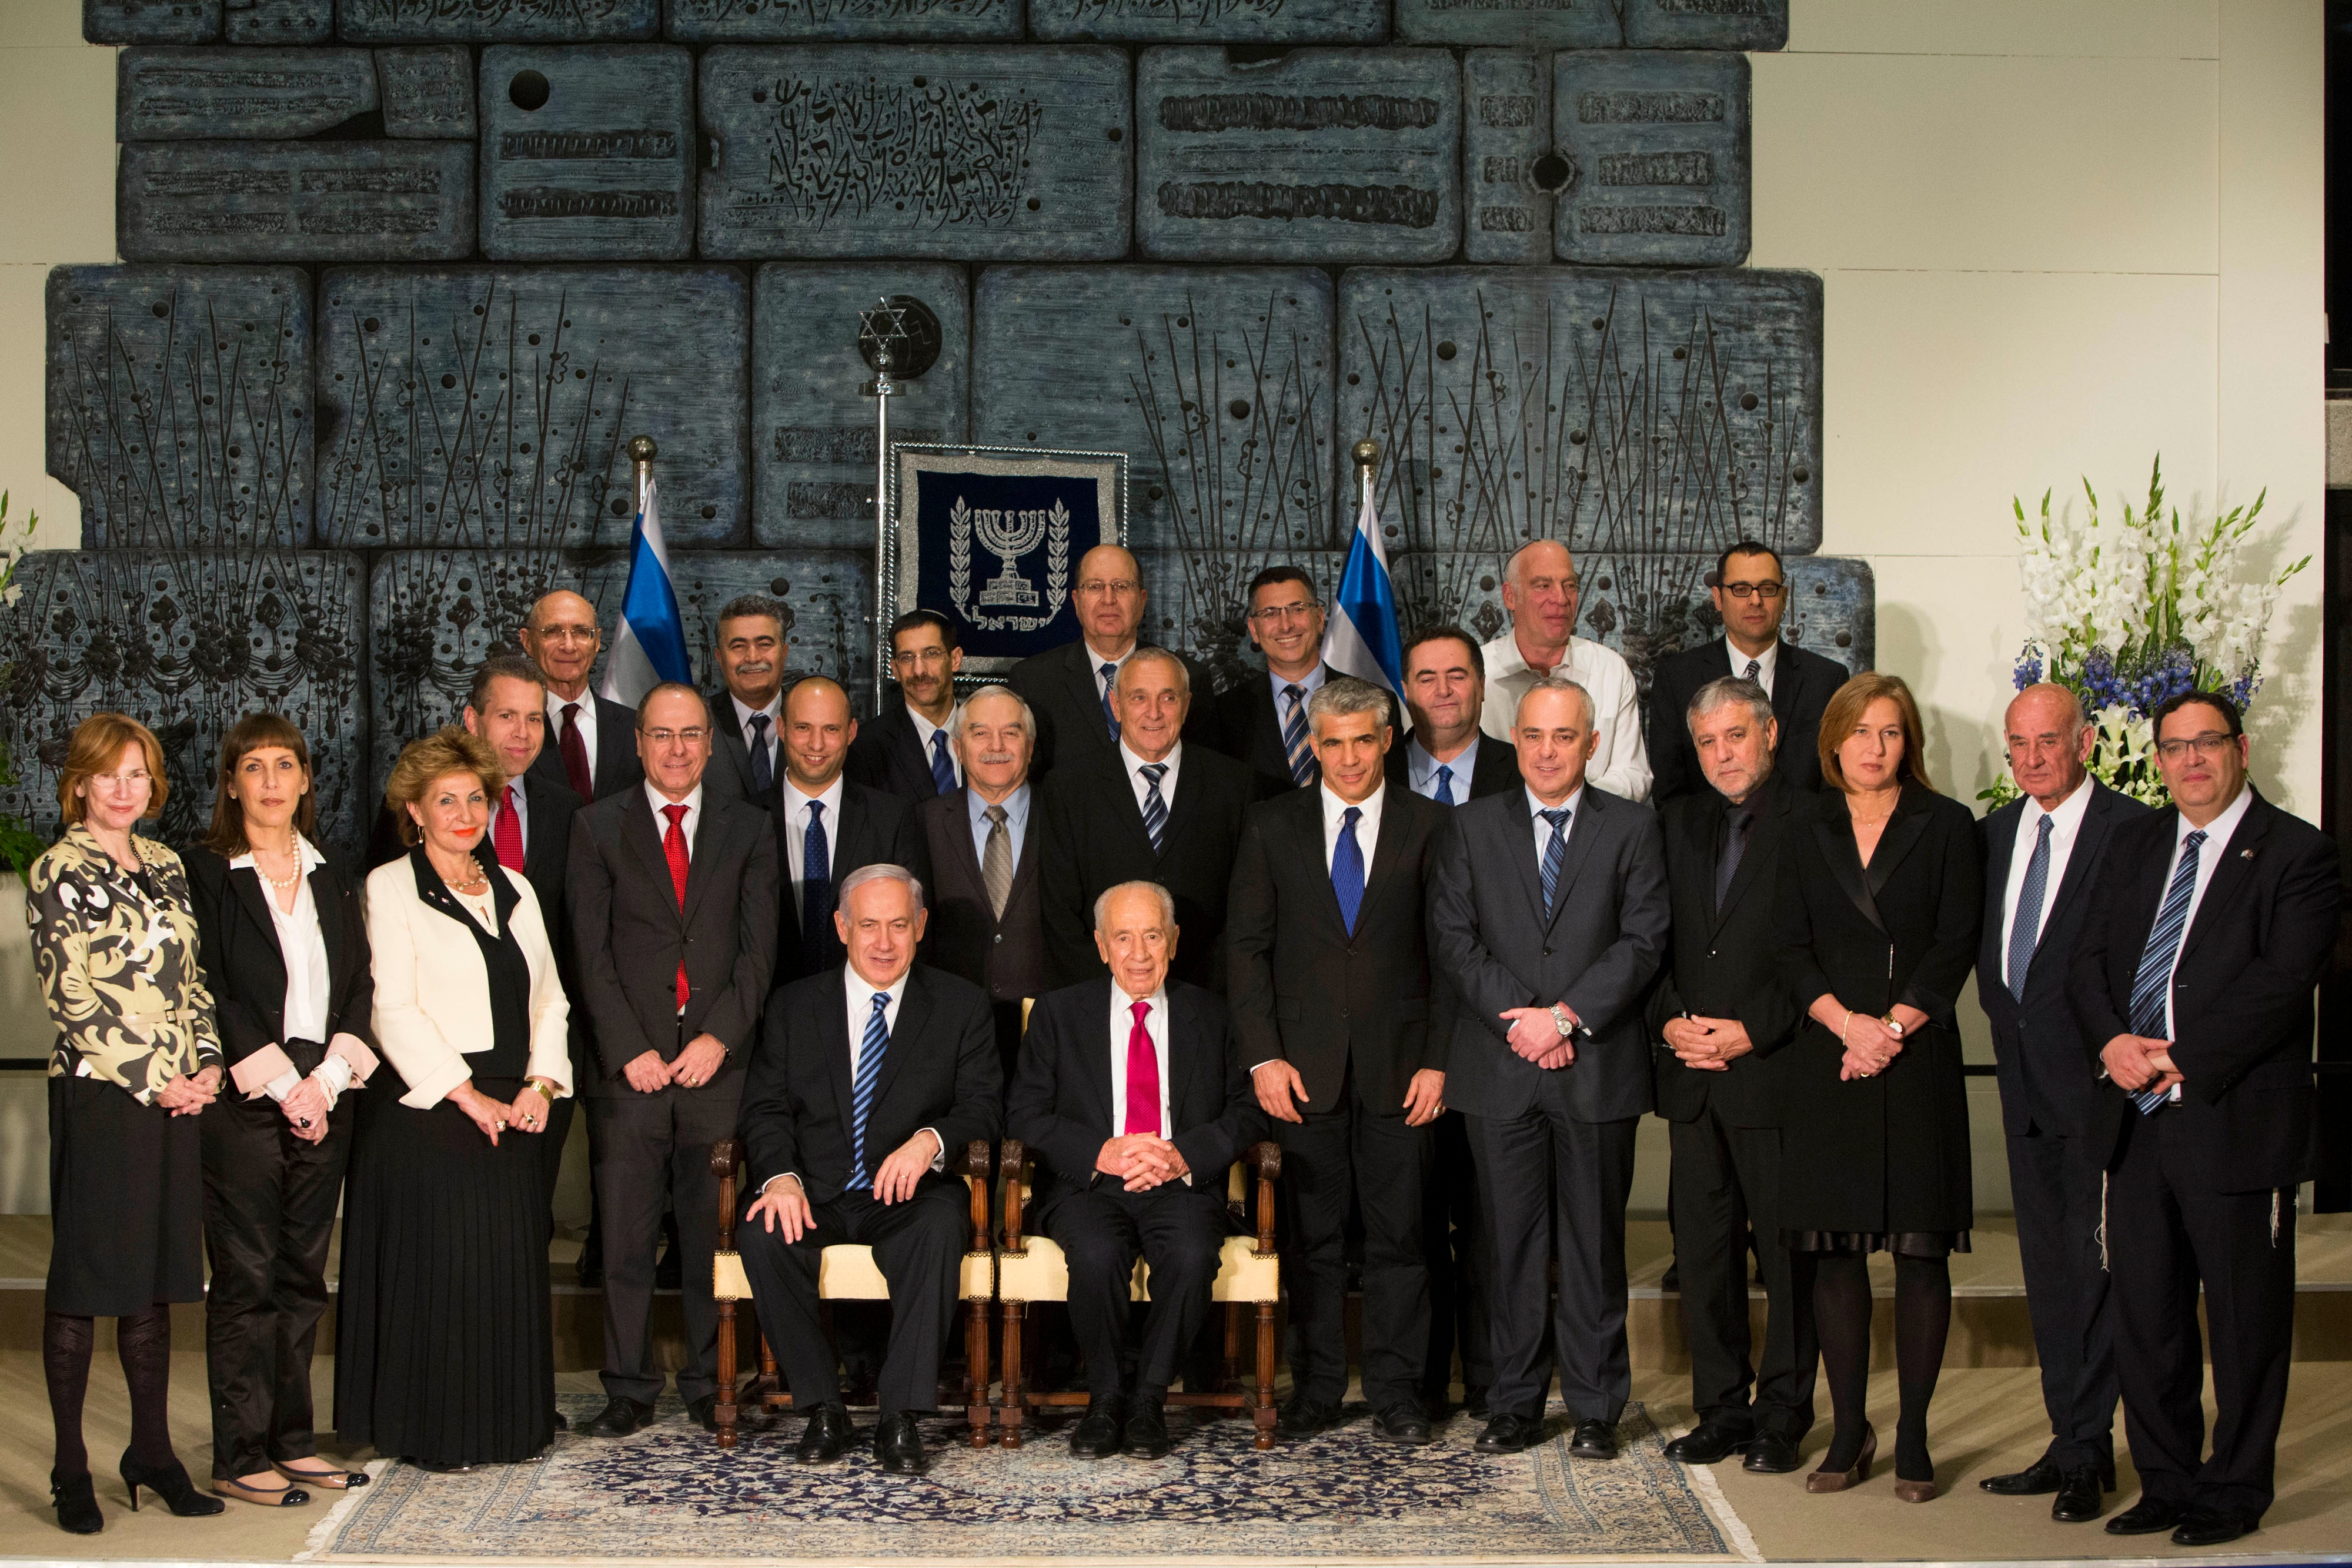 Сайт министерства израиля. Правительство Израиля. Правительство Израиля 1973. Израильский кабинет министров. Кабинет министров Израиля министры Израиля.